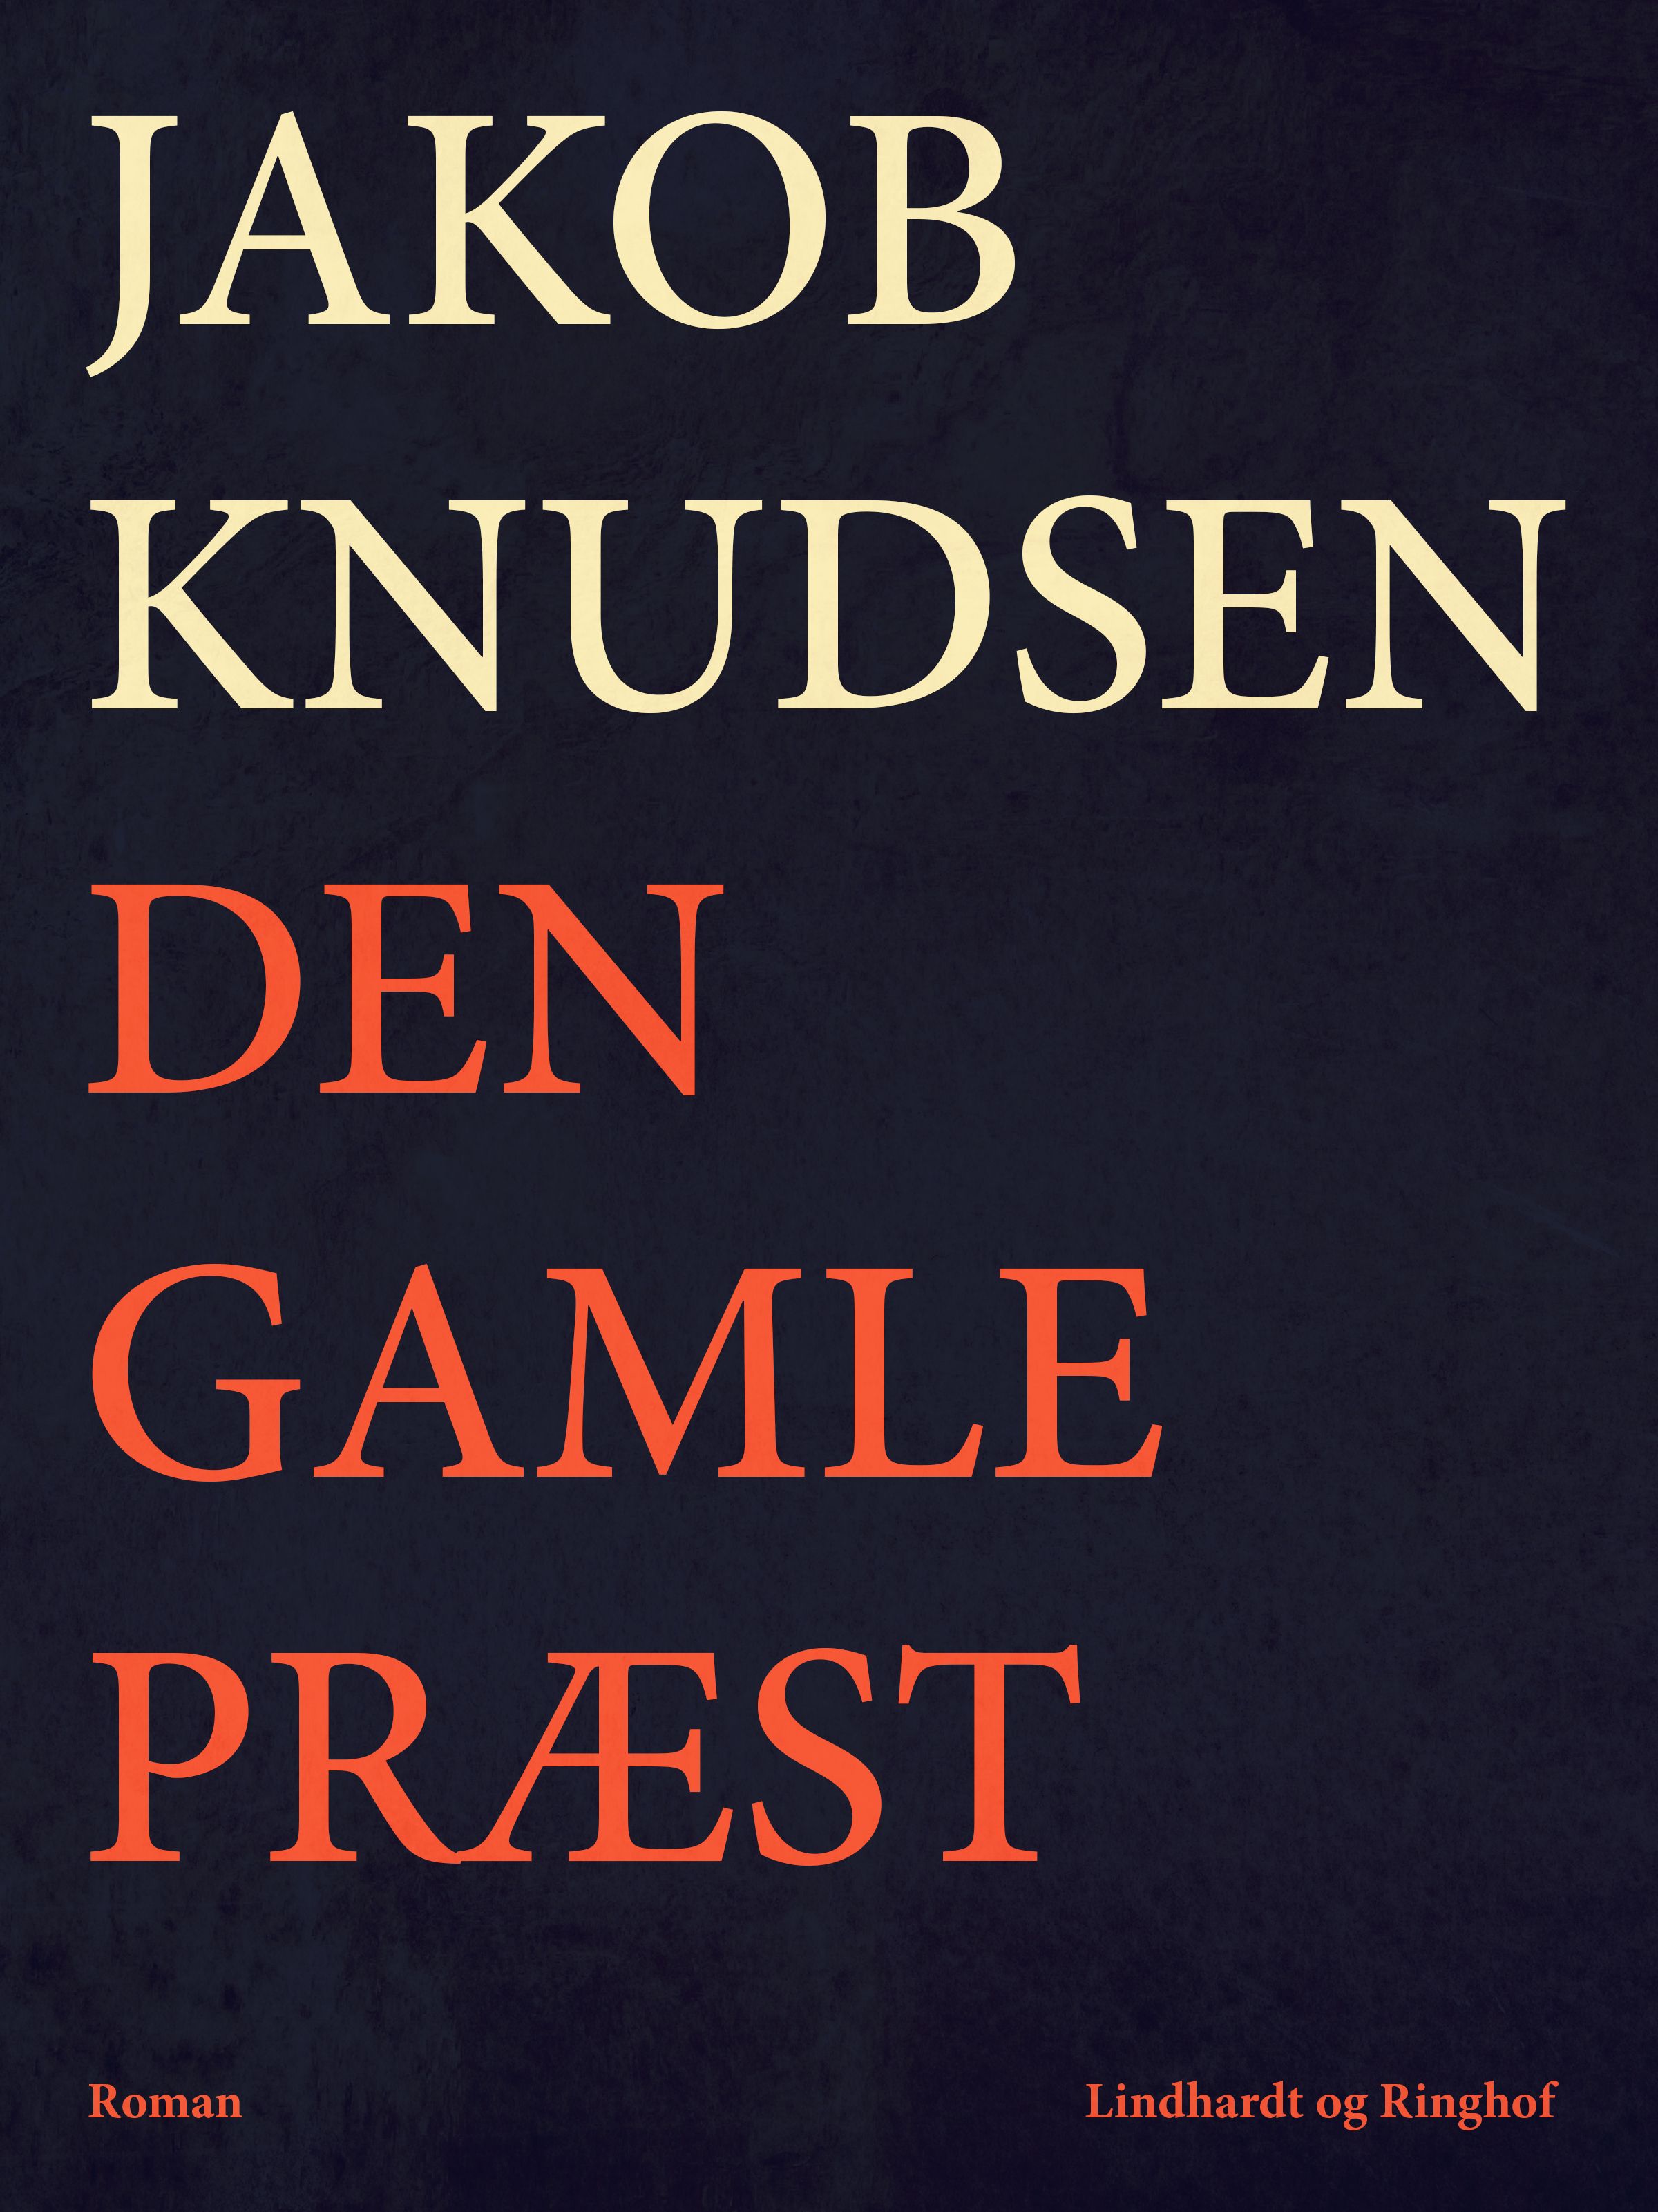 Den gamle præst, ljudbok av Jakob Knudsen